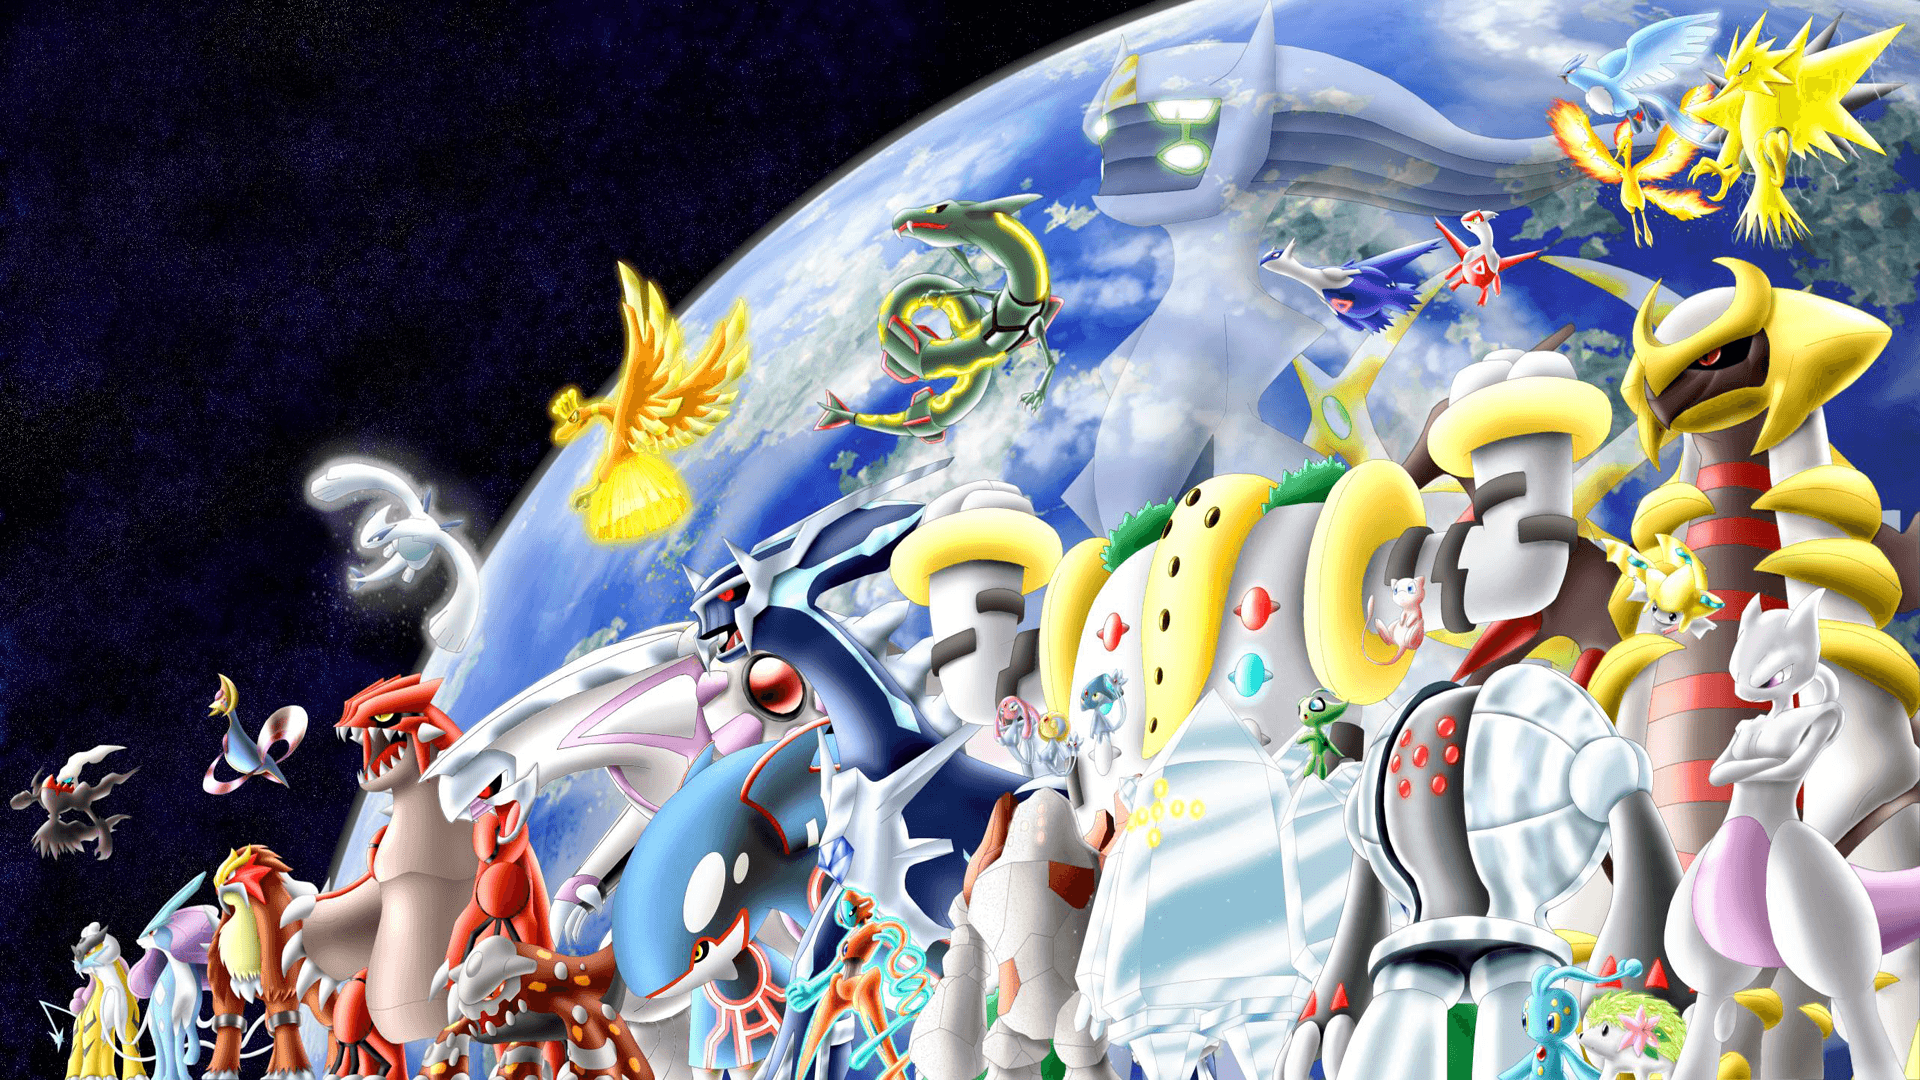 Regigigas (Pokémon) HD Wallpaper and Background Image